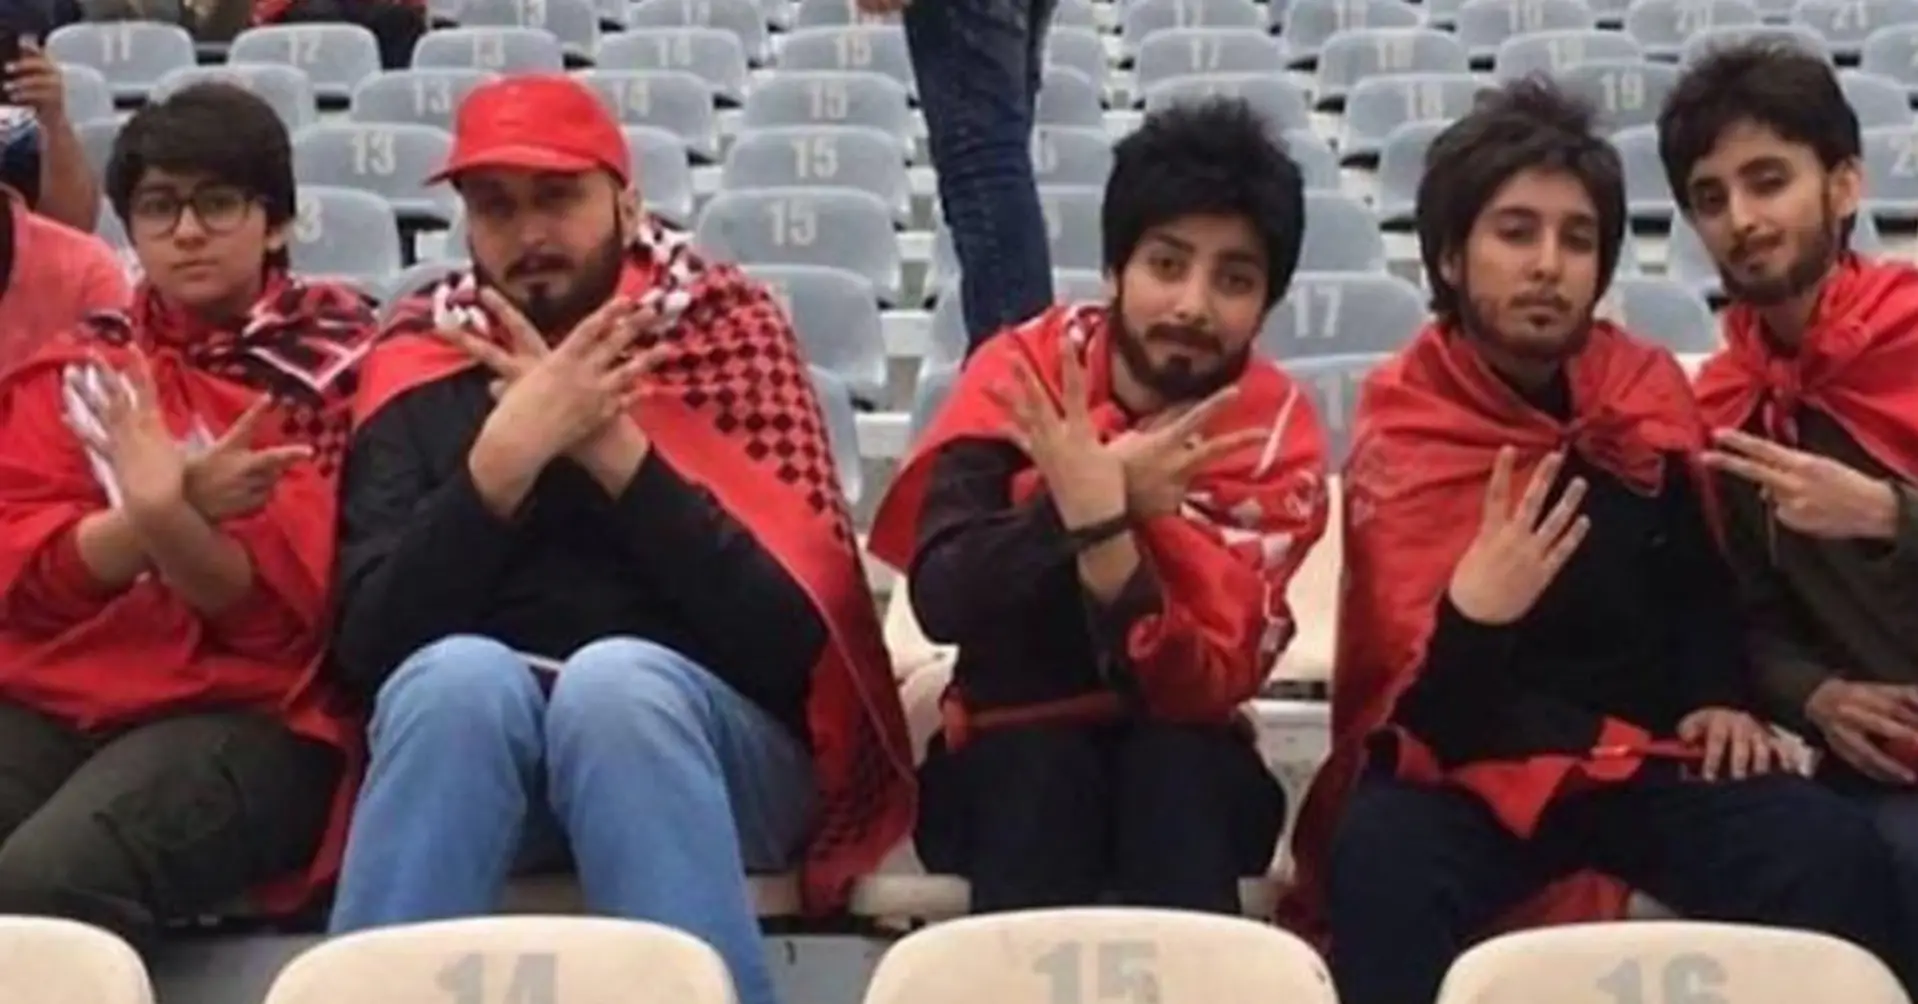 Le donne non possono assistere alle partite di calcio in Iran, ma questi 5 "ragazzi" si sono divertiti tantissimo